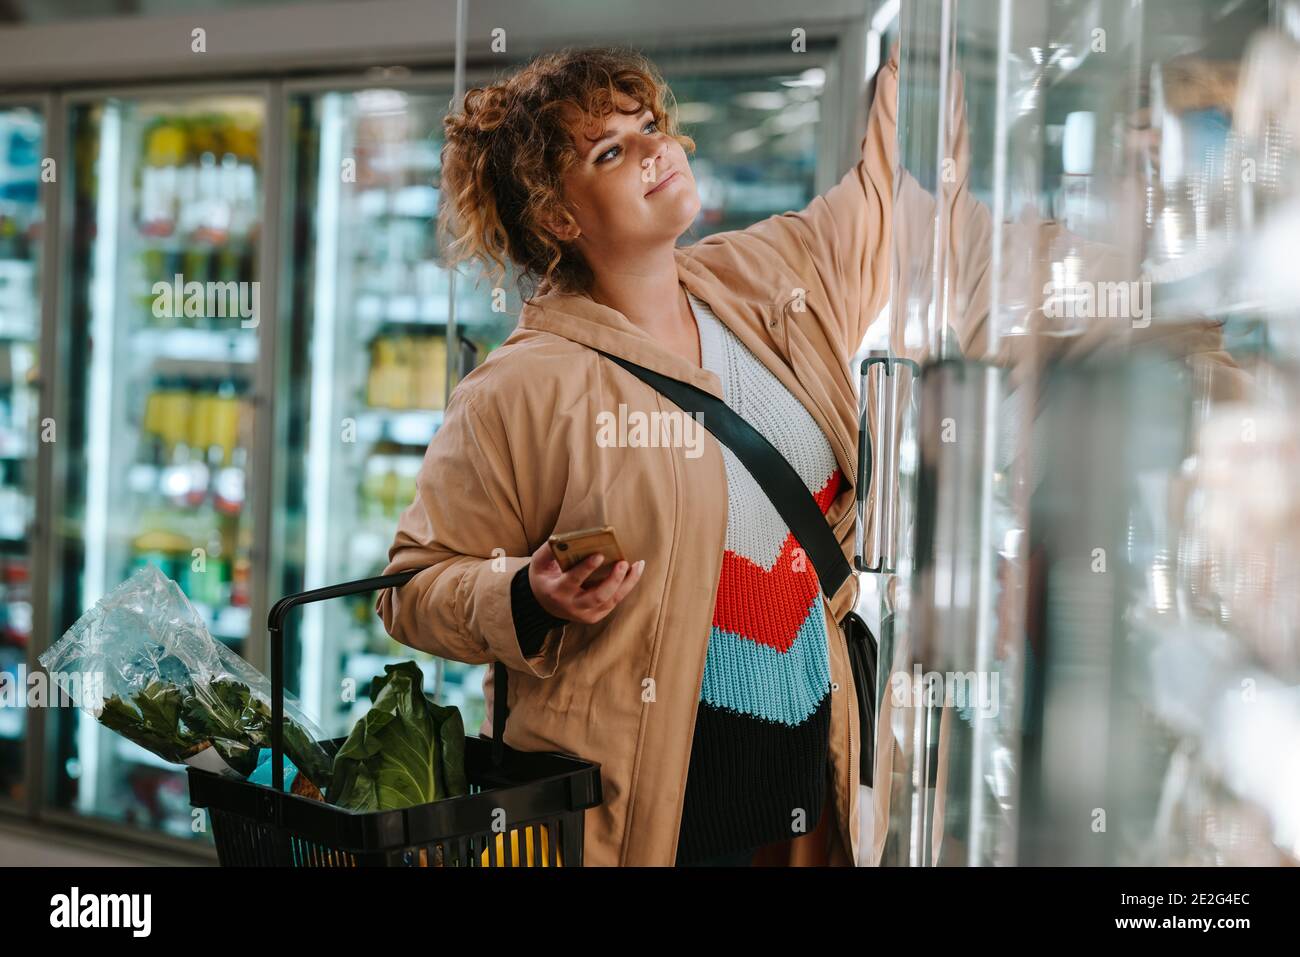 Weibliche Shopper erreichen Produkt aus dem Gefrierschrank im Supermarkt. Frau, die Lebensmittel aus einem Lebensmittelgeschäft kauft. Stockfoto